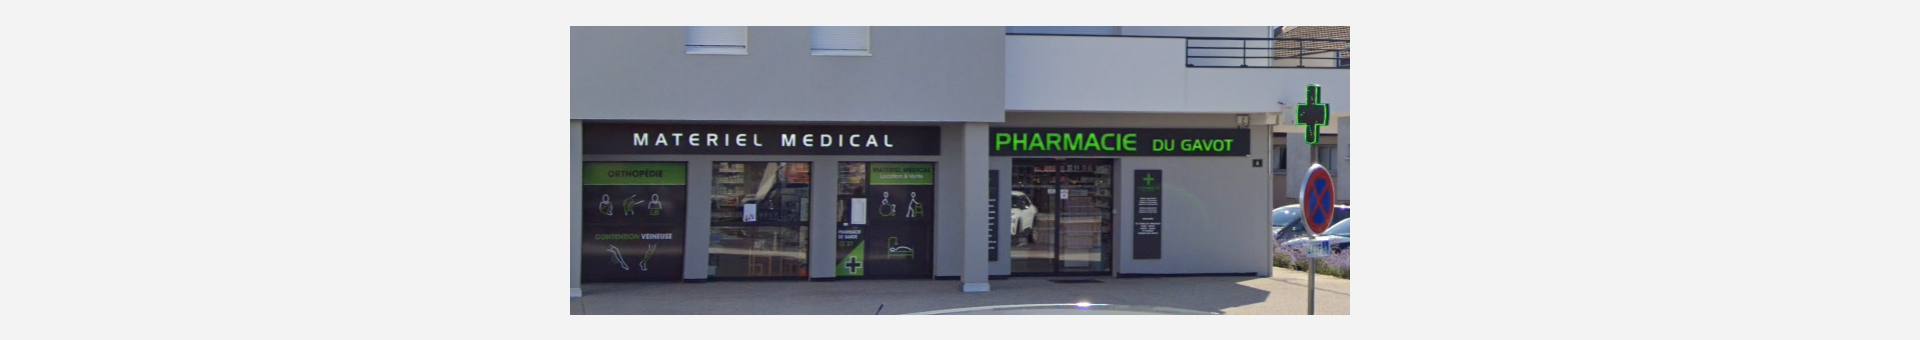 Pharmacie du Gavot,Saint-Paul-en-Chablais